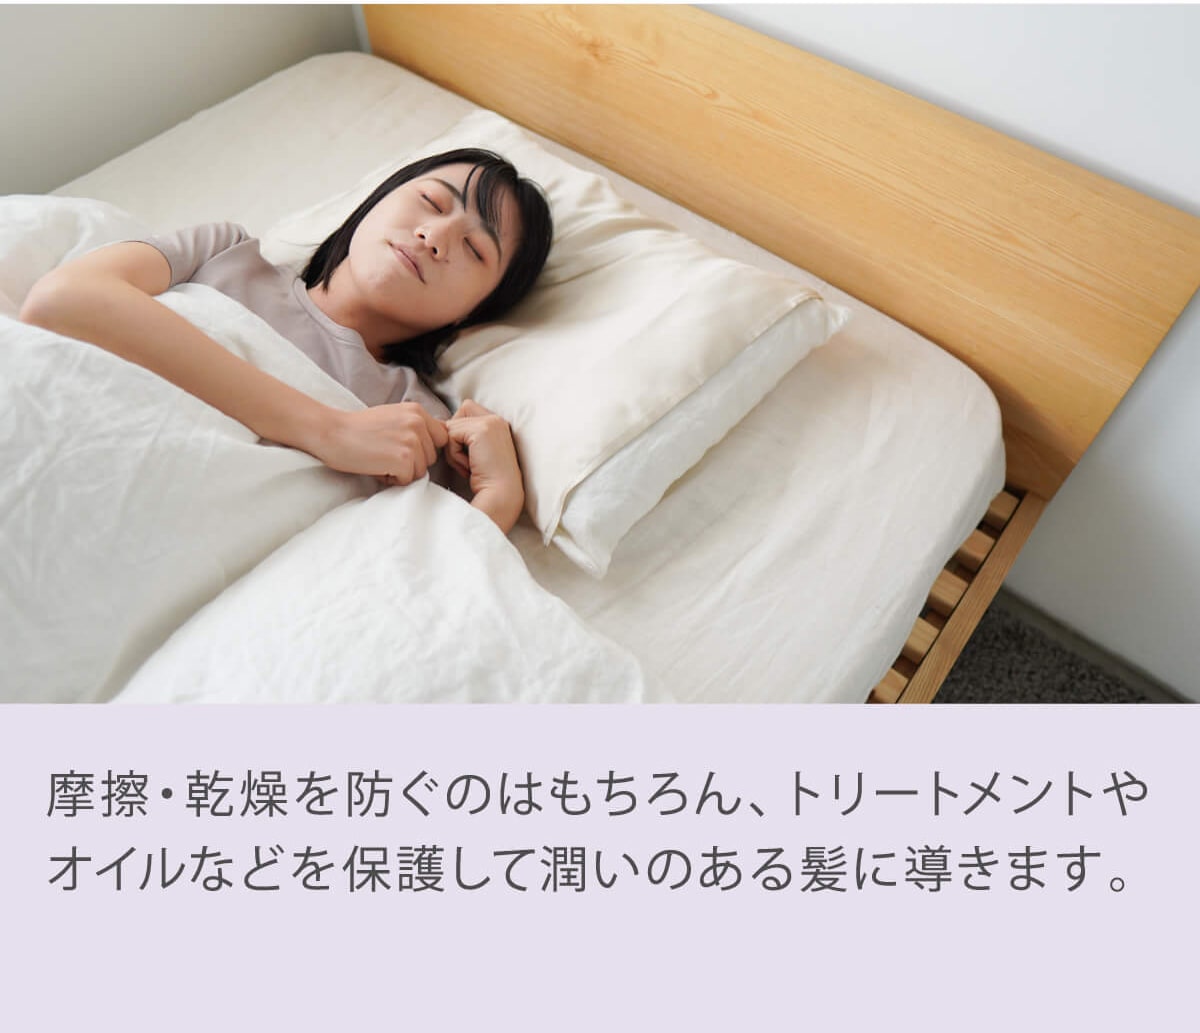 枕カバー 潤肌髪 シルク 100% まくら カバー 美容 天然素材 睡眠 安眠 